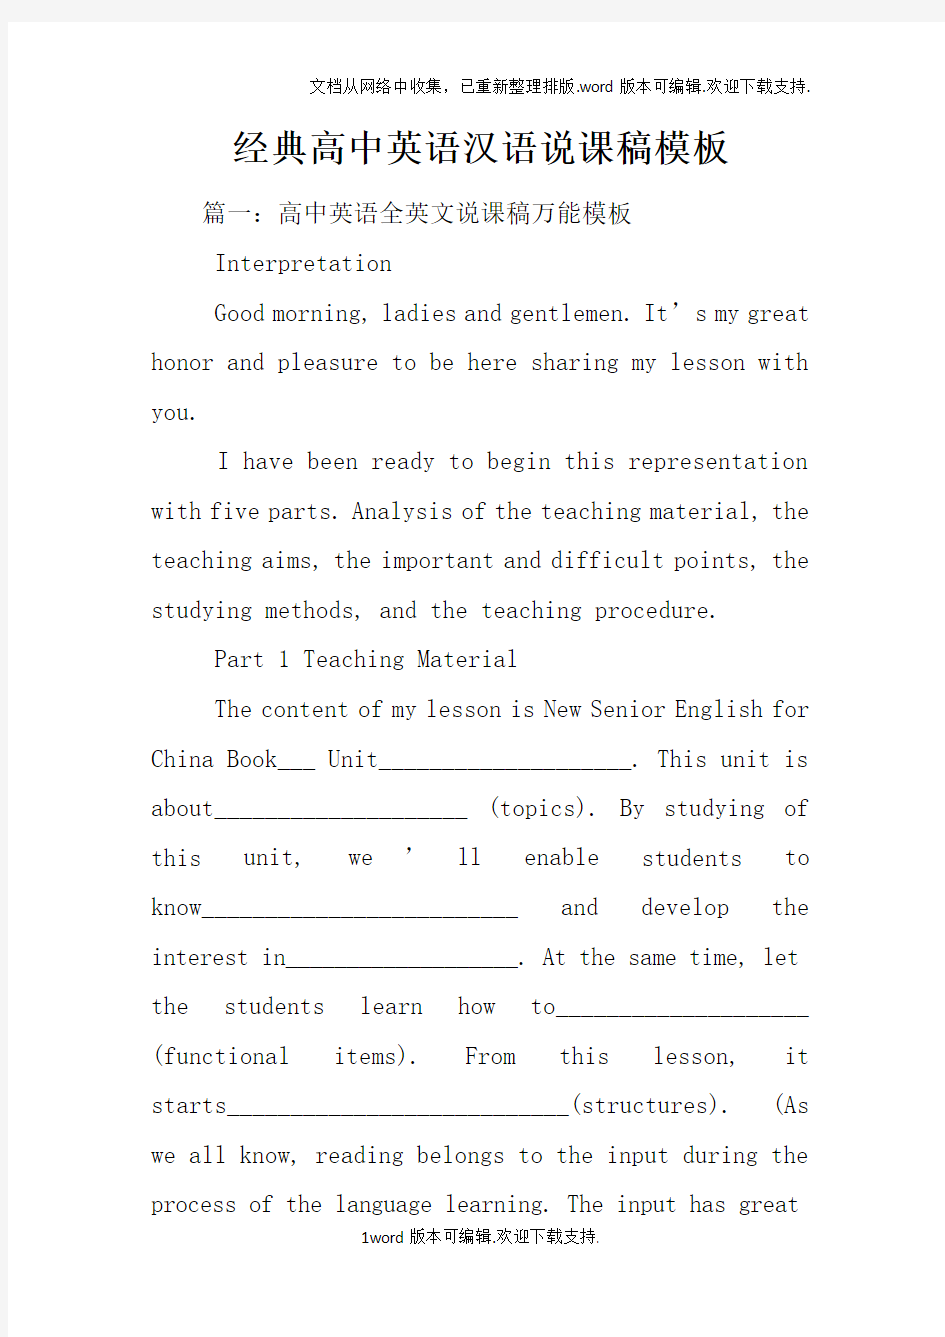 经典高中英语汉语说课稿模板